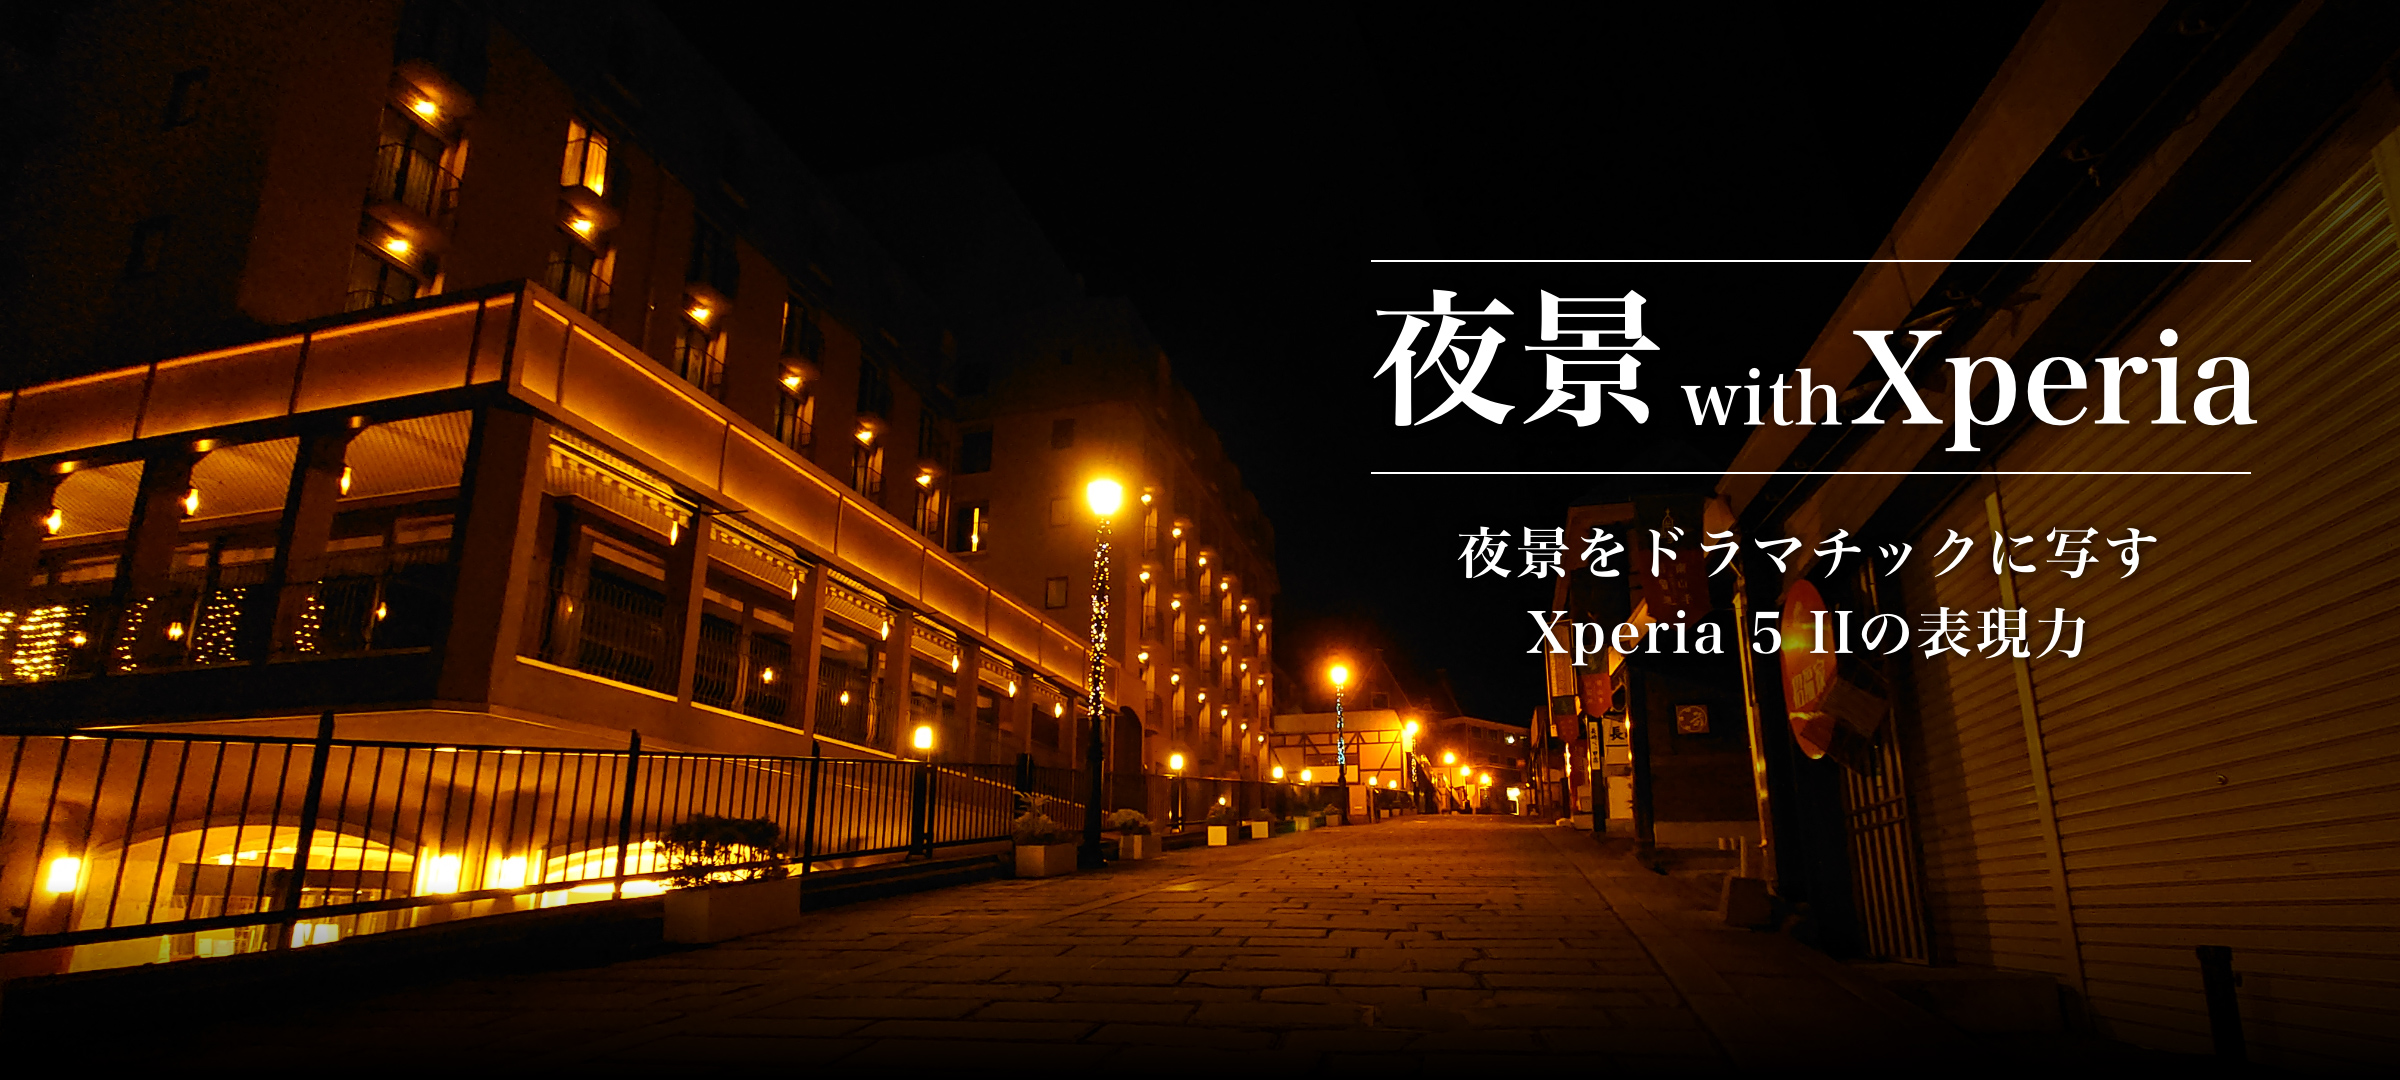 夜景 with Xperia 夜景をドラマチックに写すXperia 5 IIの表現力